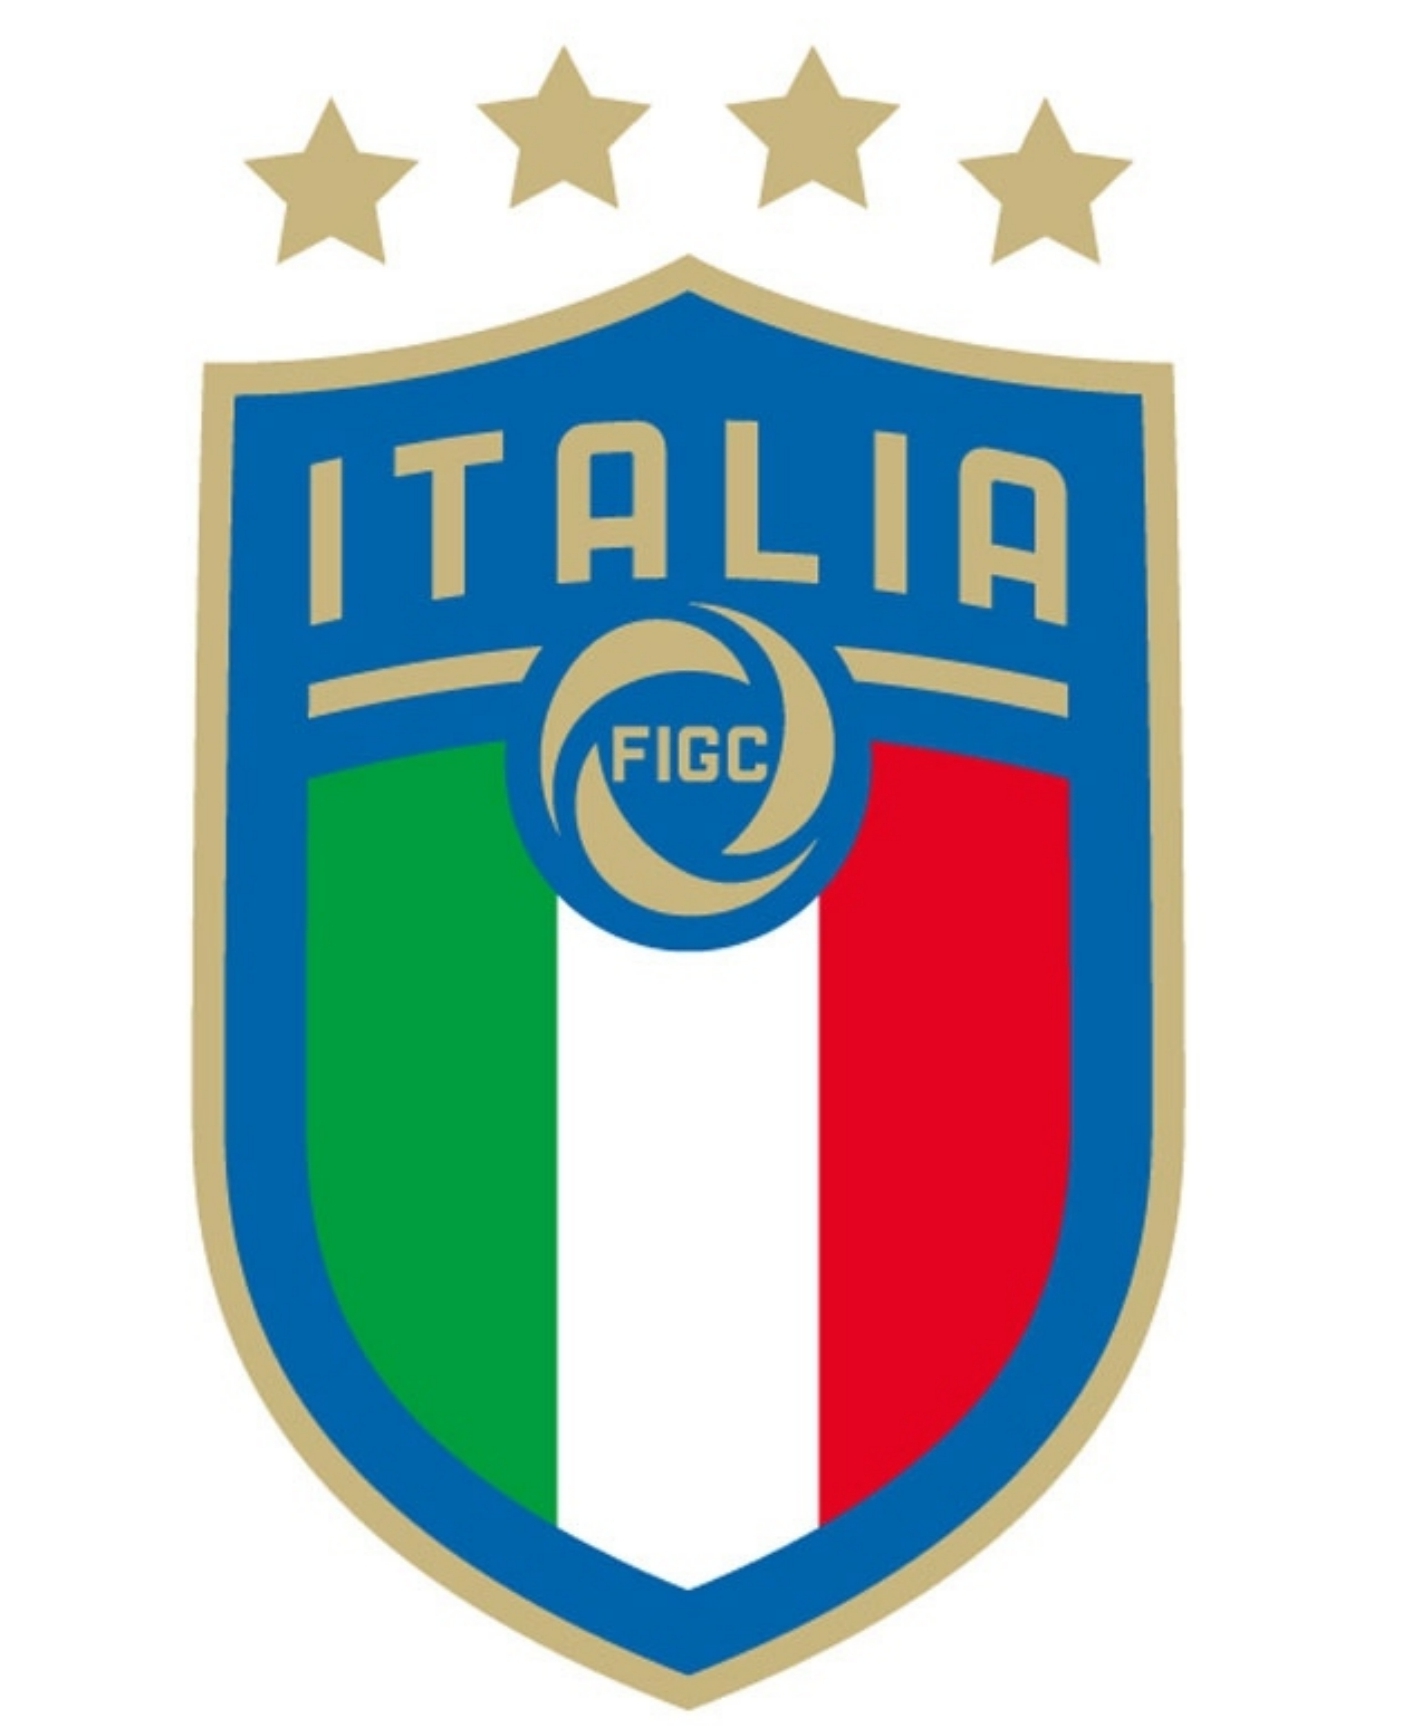 Il logo della Nazionale con le 4 stelle dei 4 Mondiali conquistati e della Federcalcio italiana